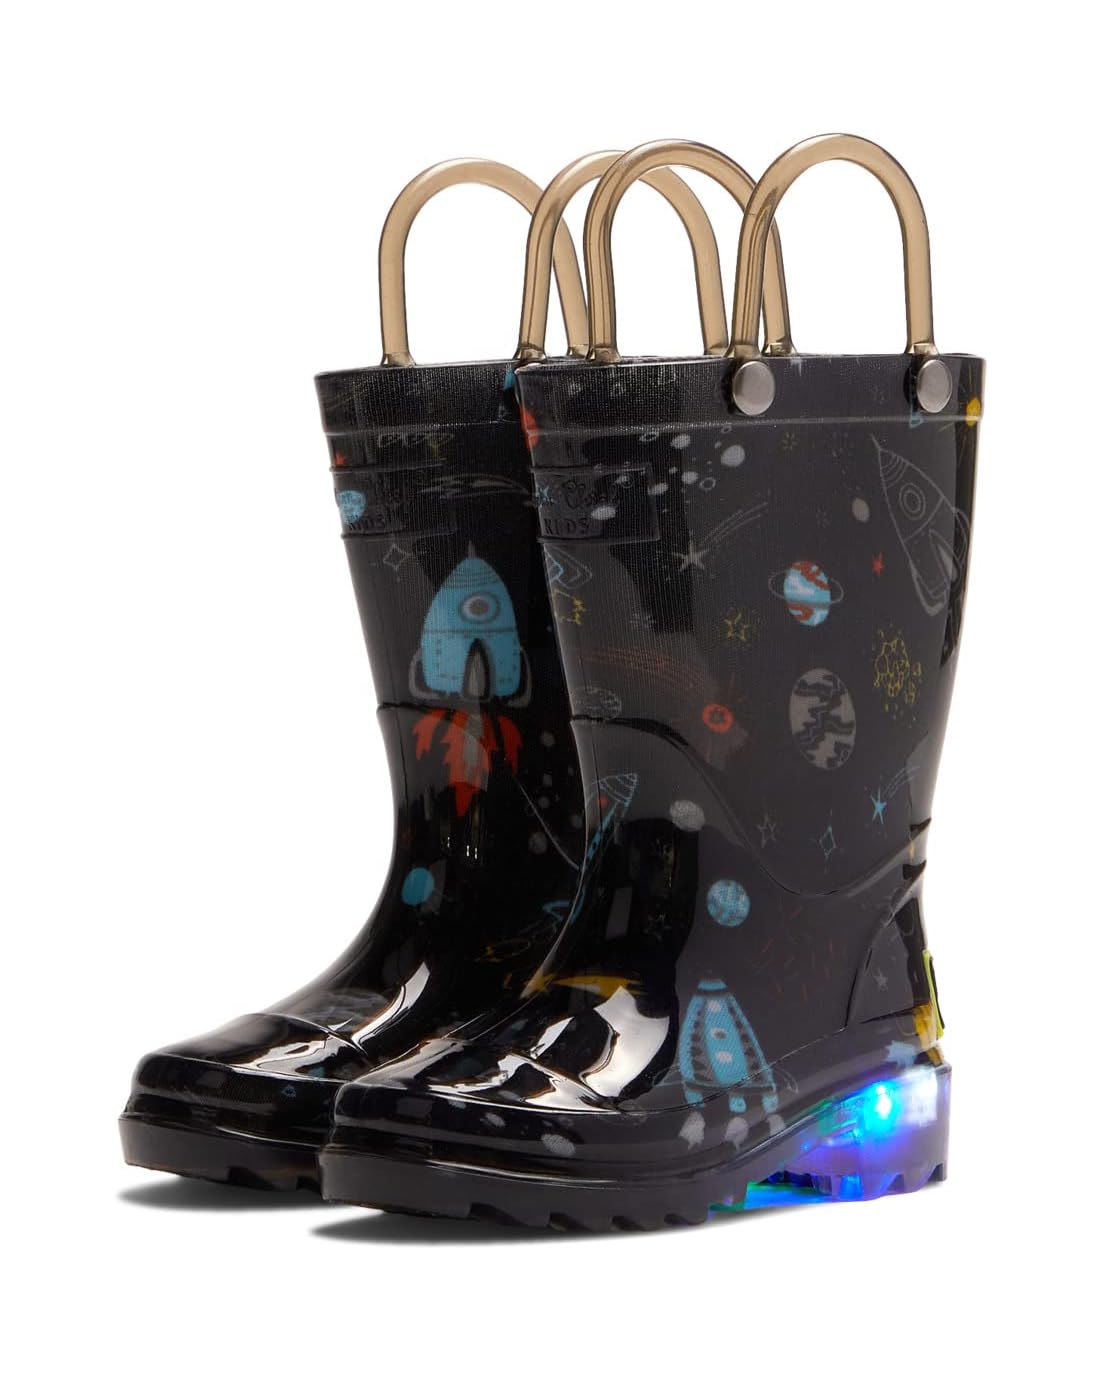 Western Chief Kids Space Adventure Lighted Waterproof Rain Boot (Toddleru002FLittle Kid)